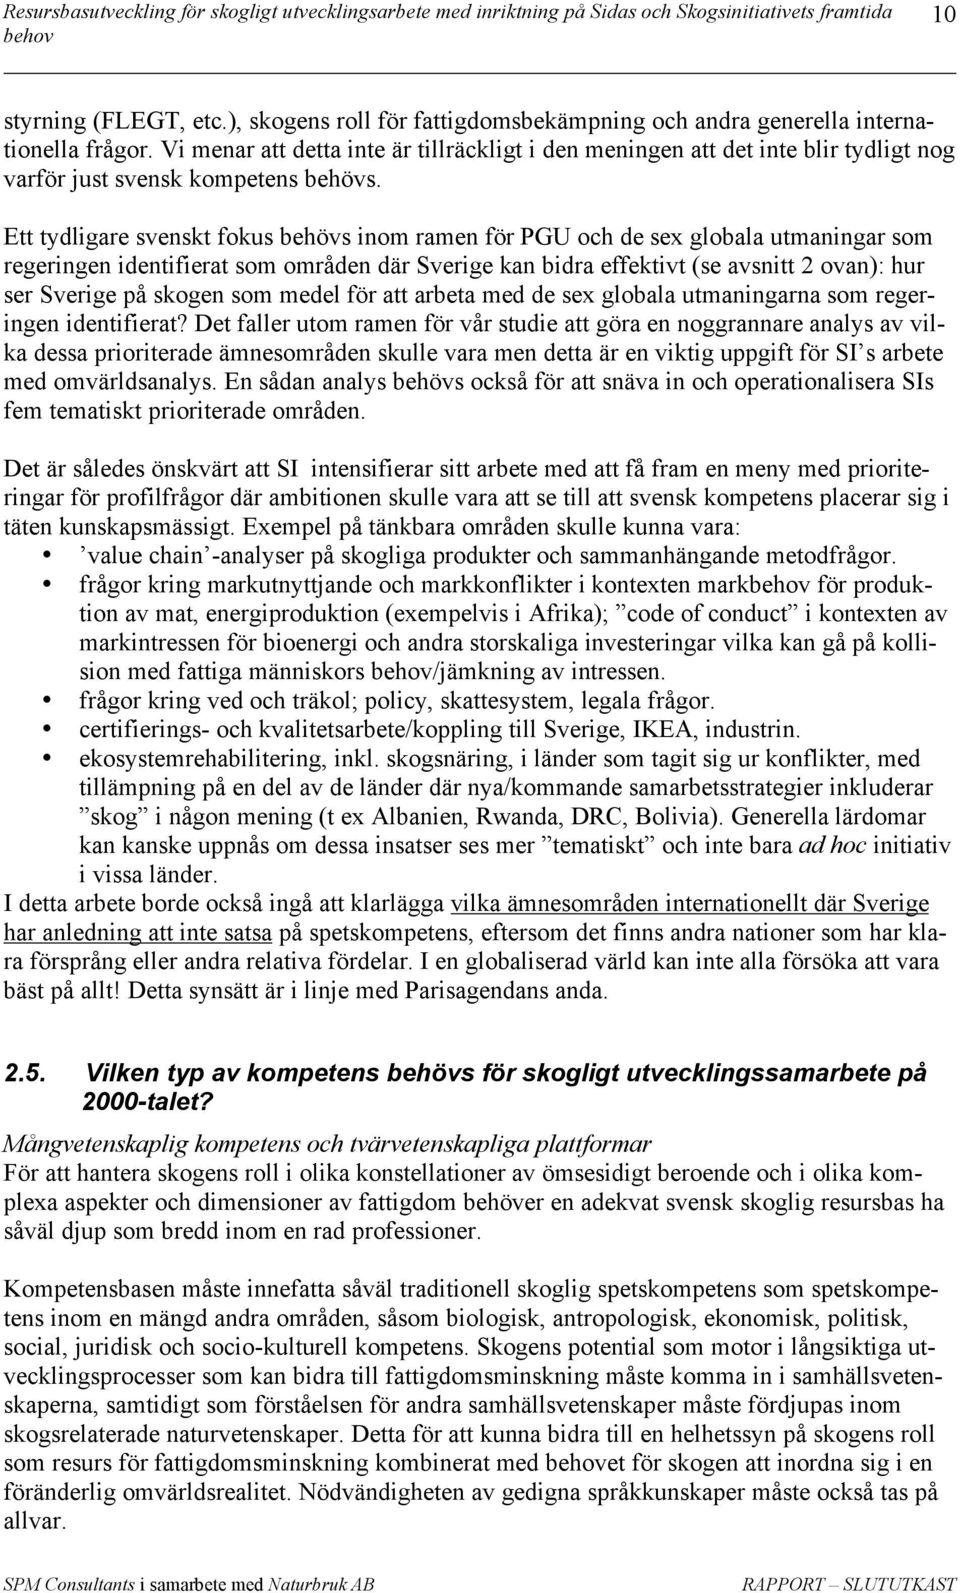 Ett tydligare svenskt fokus behövs inom ramen för PGU och de sex globala utmaningar som regeringen identifierat som områden där Sverige kan bidra effektivt (se avsnitt 2 ovan): hur ser Sverige på